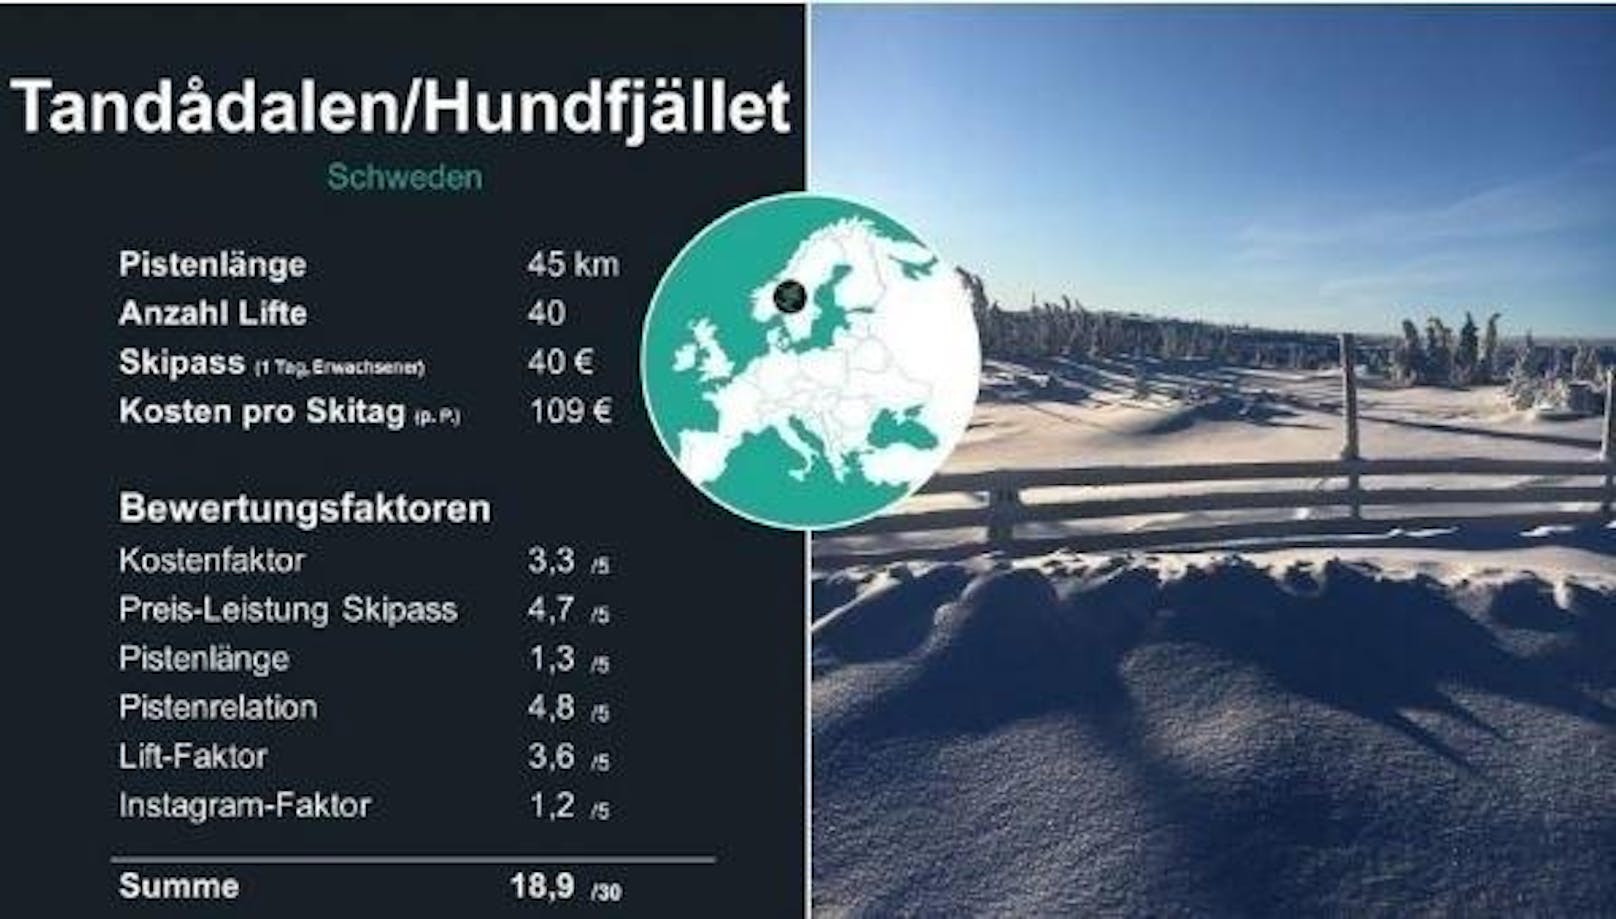 <b>8. Platz: Tandådalen/Hundfjället</b>

Im Vergleich zum Vorjahr gewinnt das schwedische Skigebiet zehn Plätze und landet erstmals in der Top 11. Die Leihgebühren sind im Vergleich zum Vorjahr um die Hälfte günstiger geworden. Der Tagespreis beträgt 109.40 Prozent der Strecke eignen sich für Anfänger.